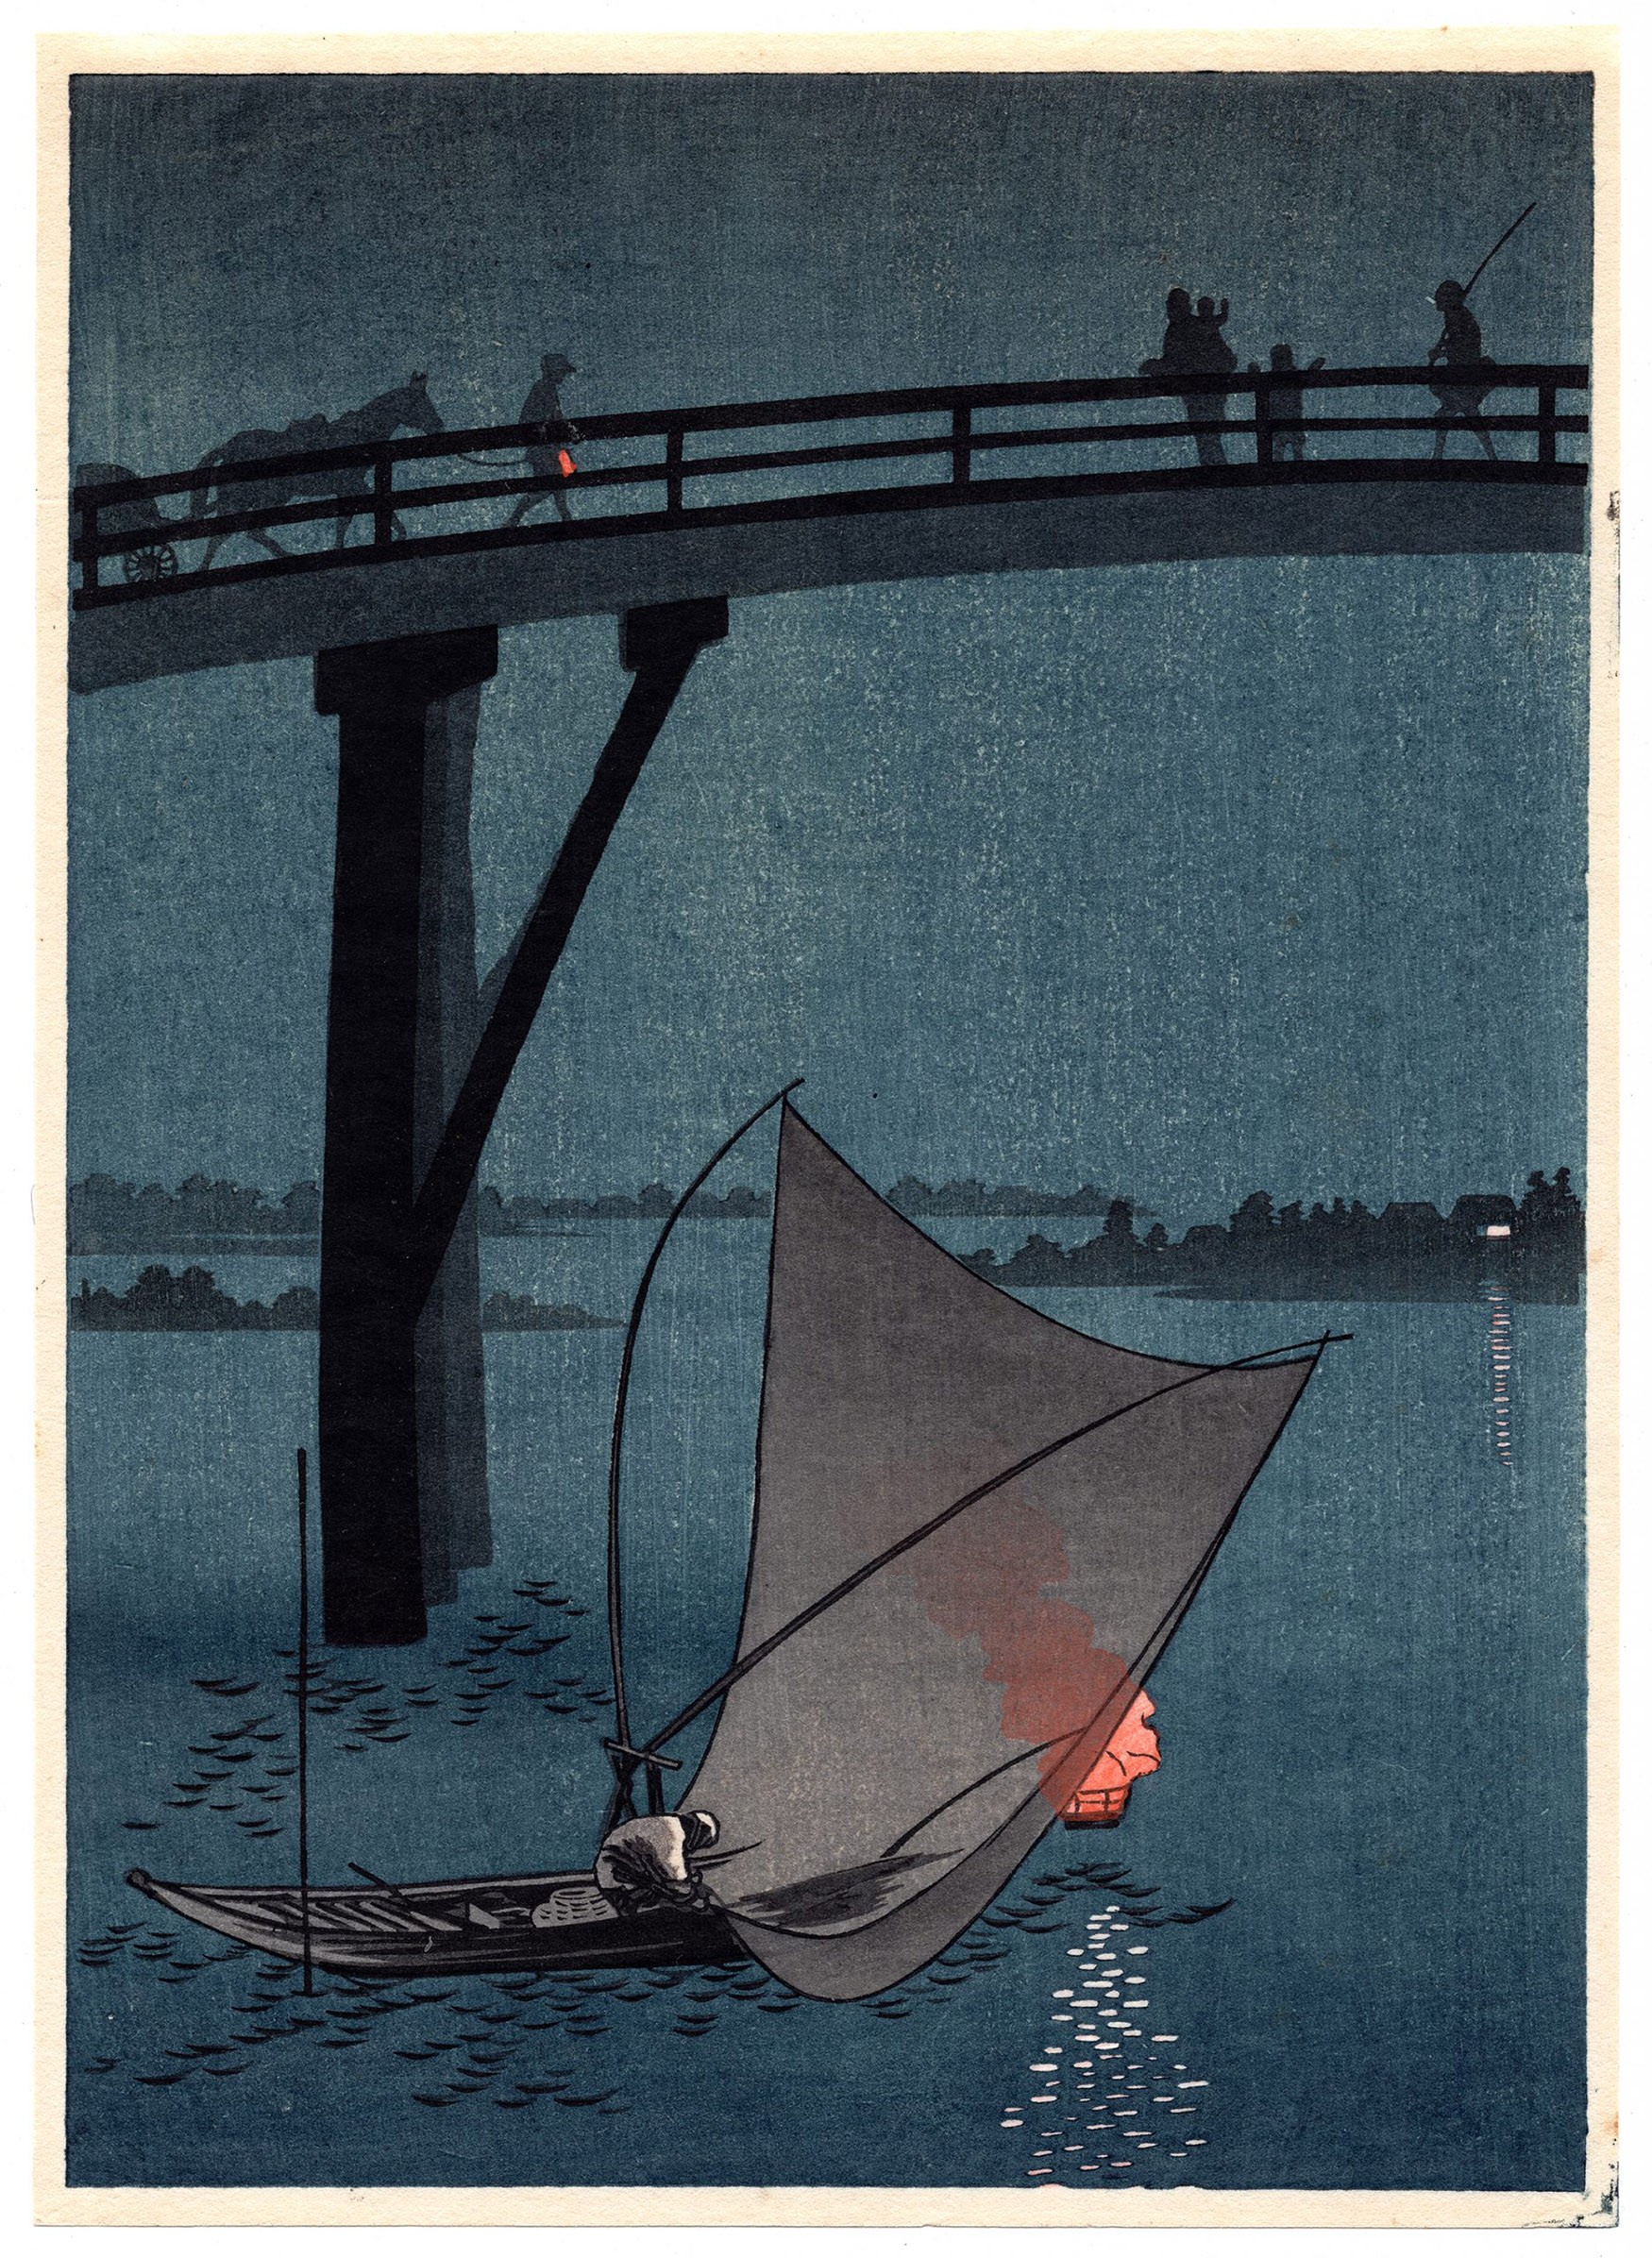 Yoshimune Arai paisaje ukiyo-e noche bajo un puente en el mar